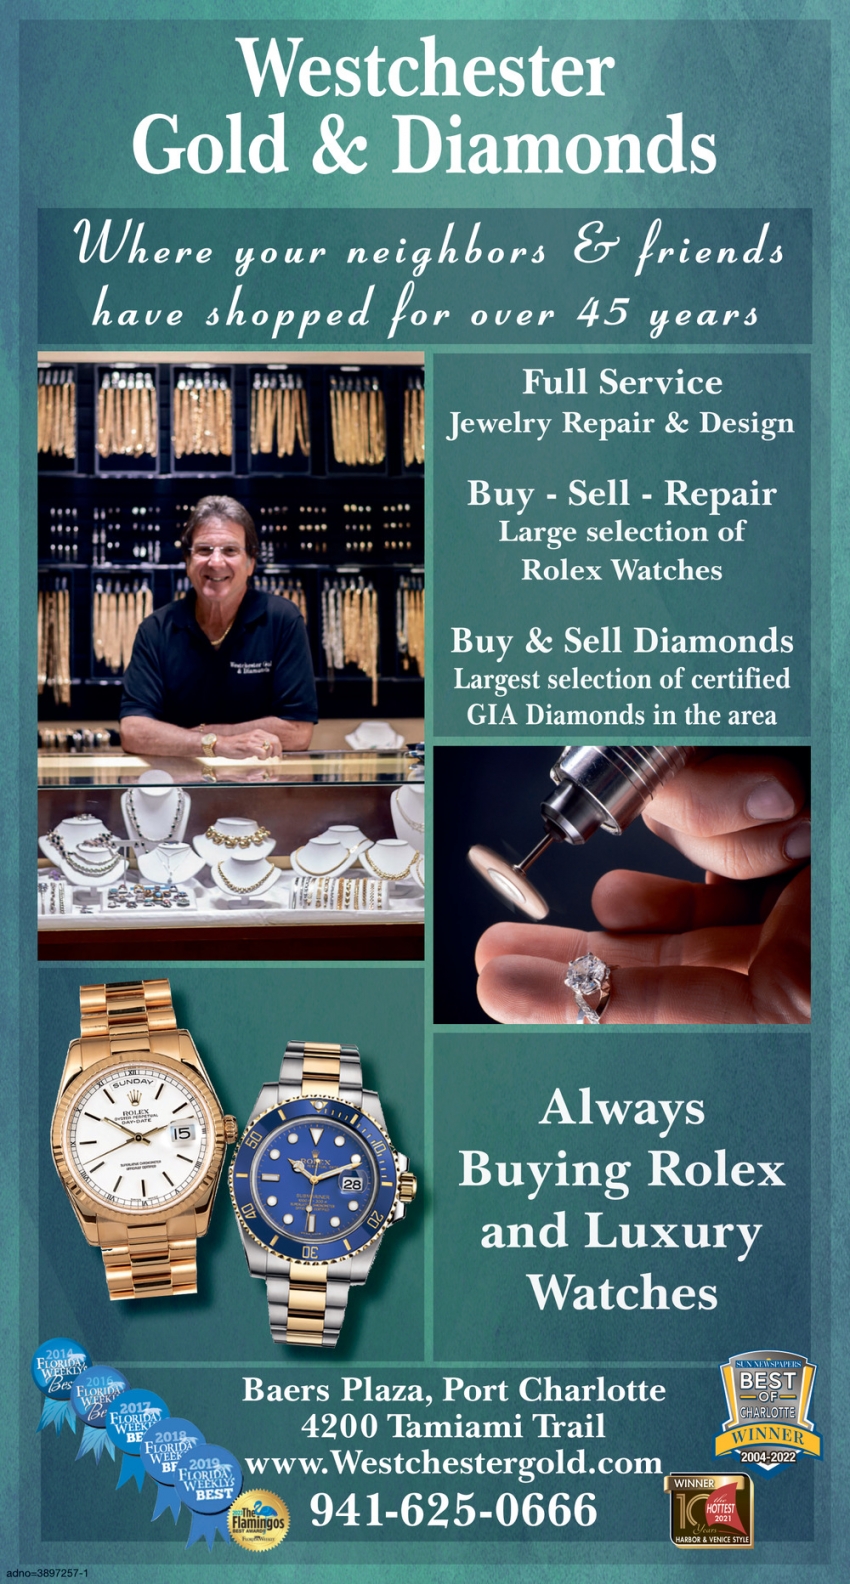 Jewelry Repair & Design